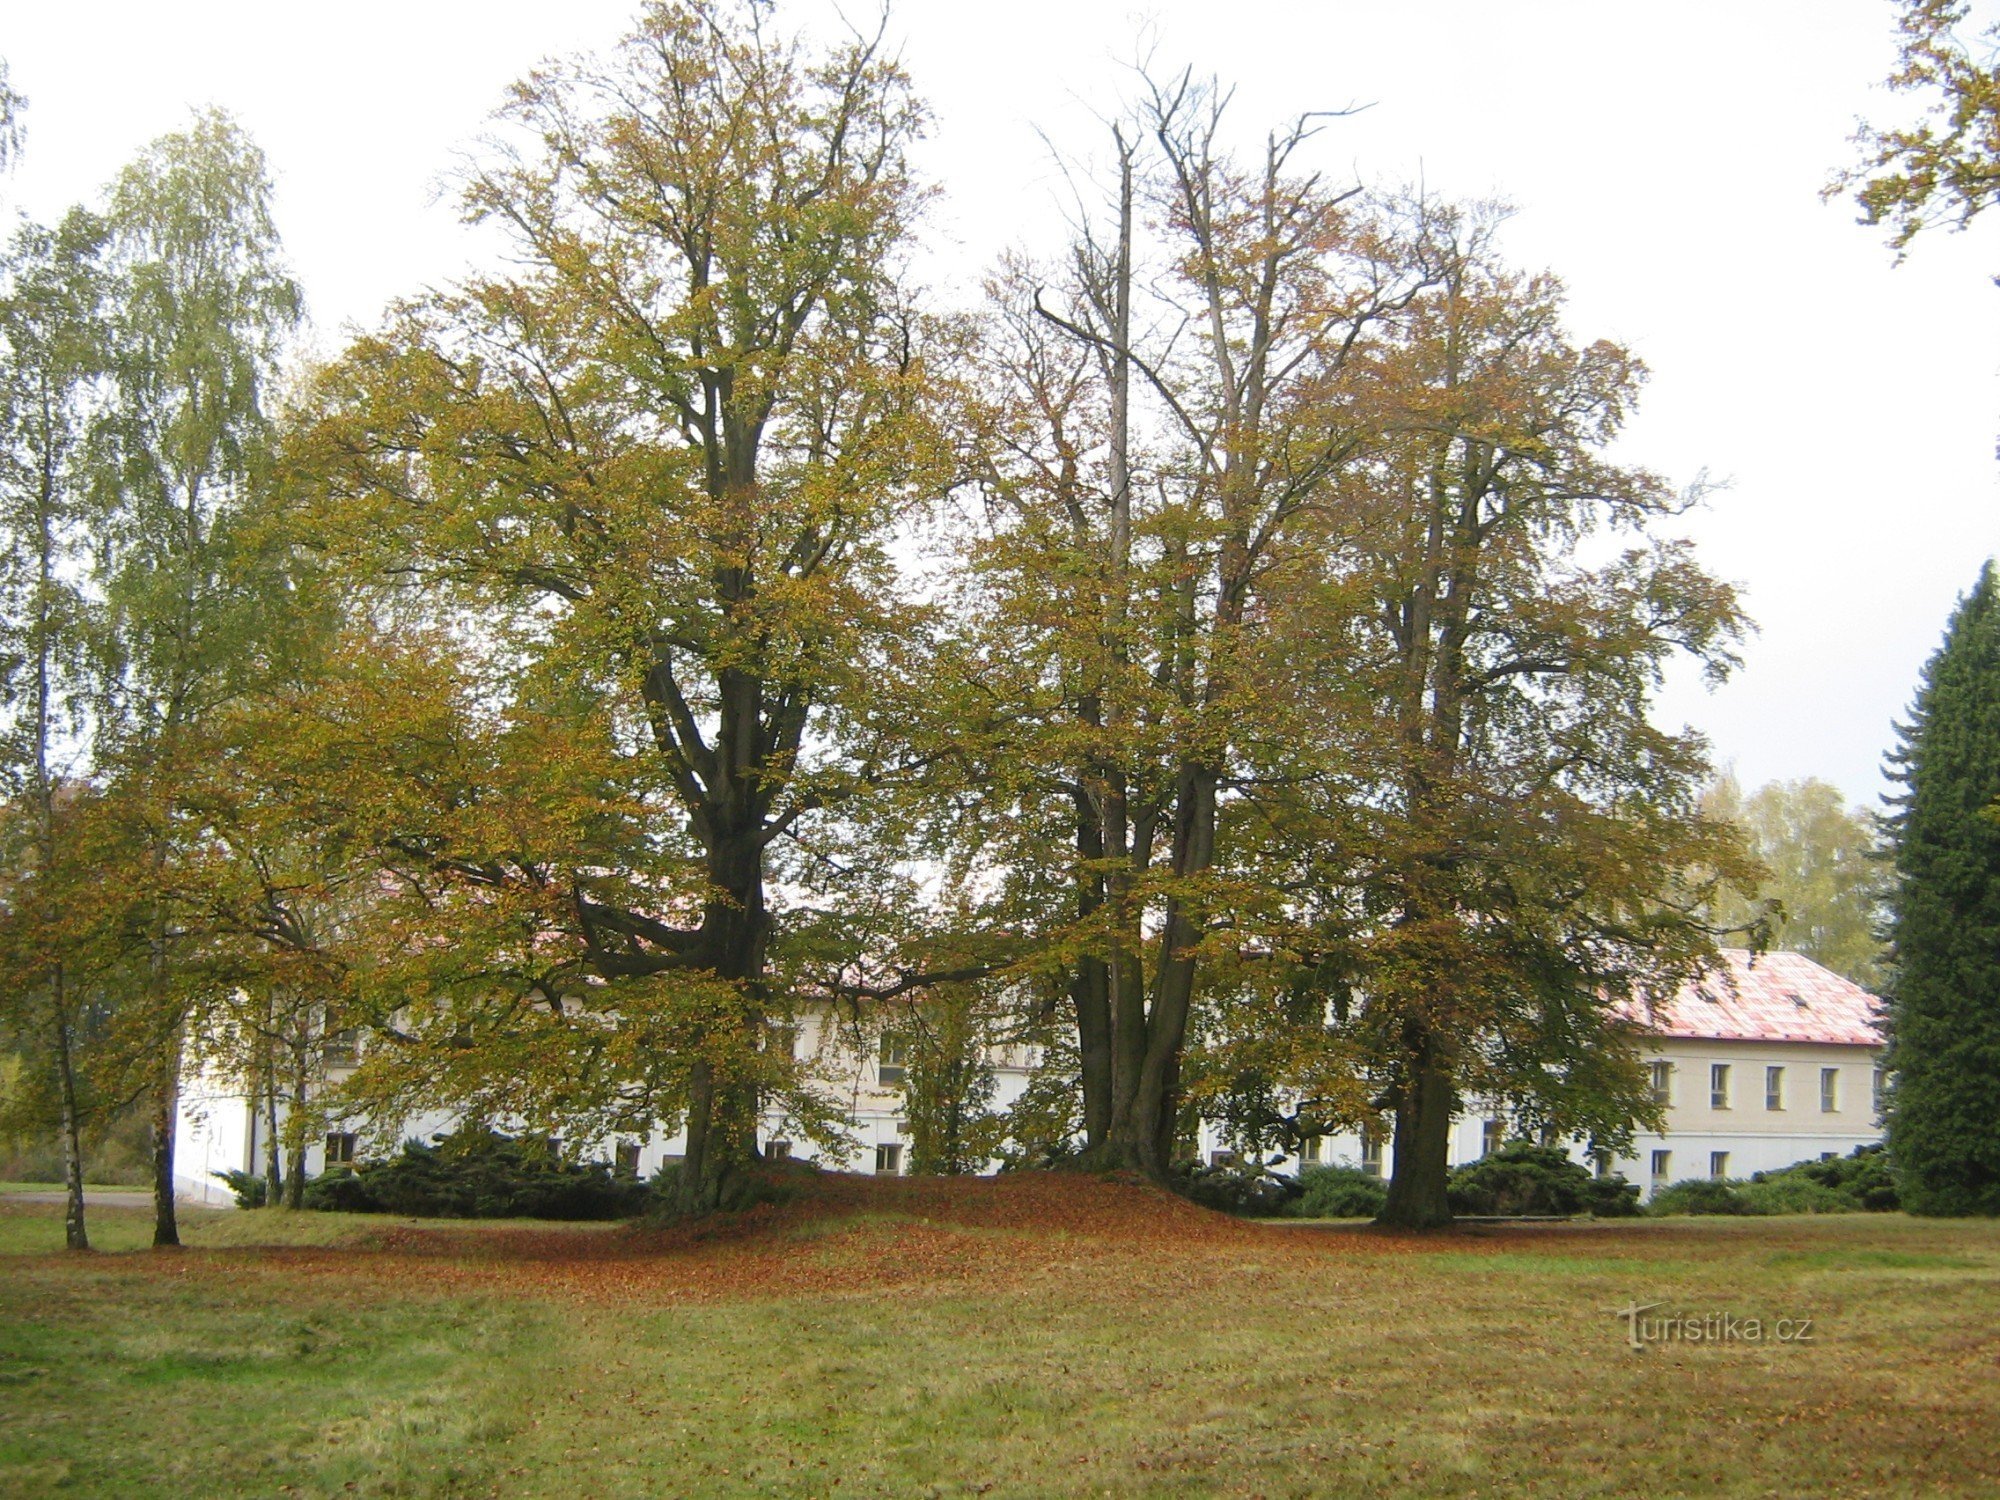 Březina - park och slott